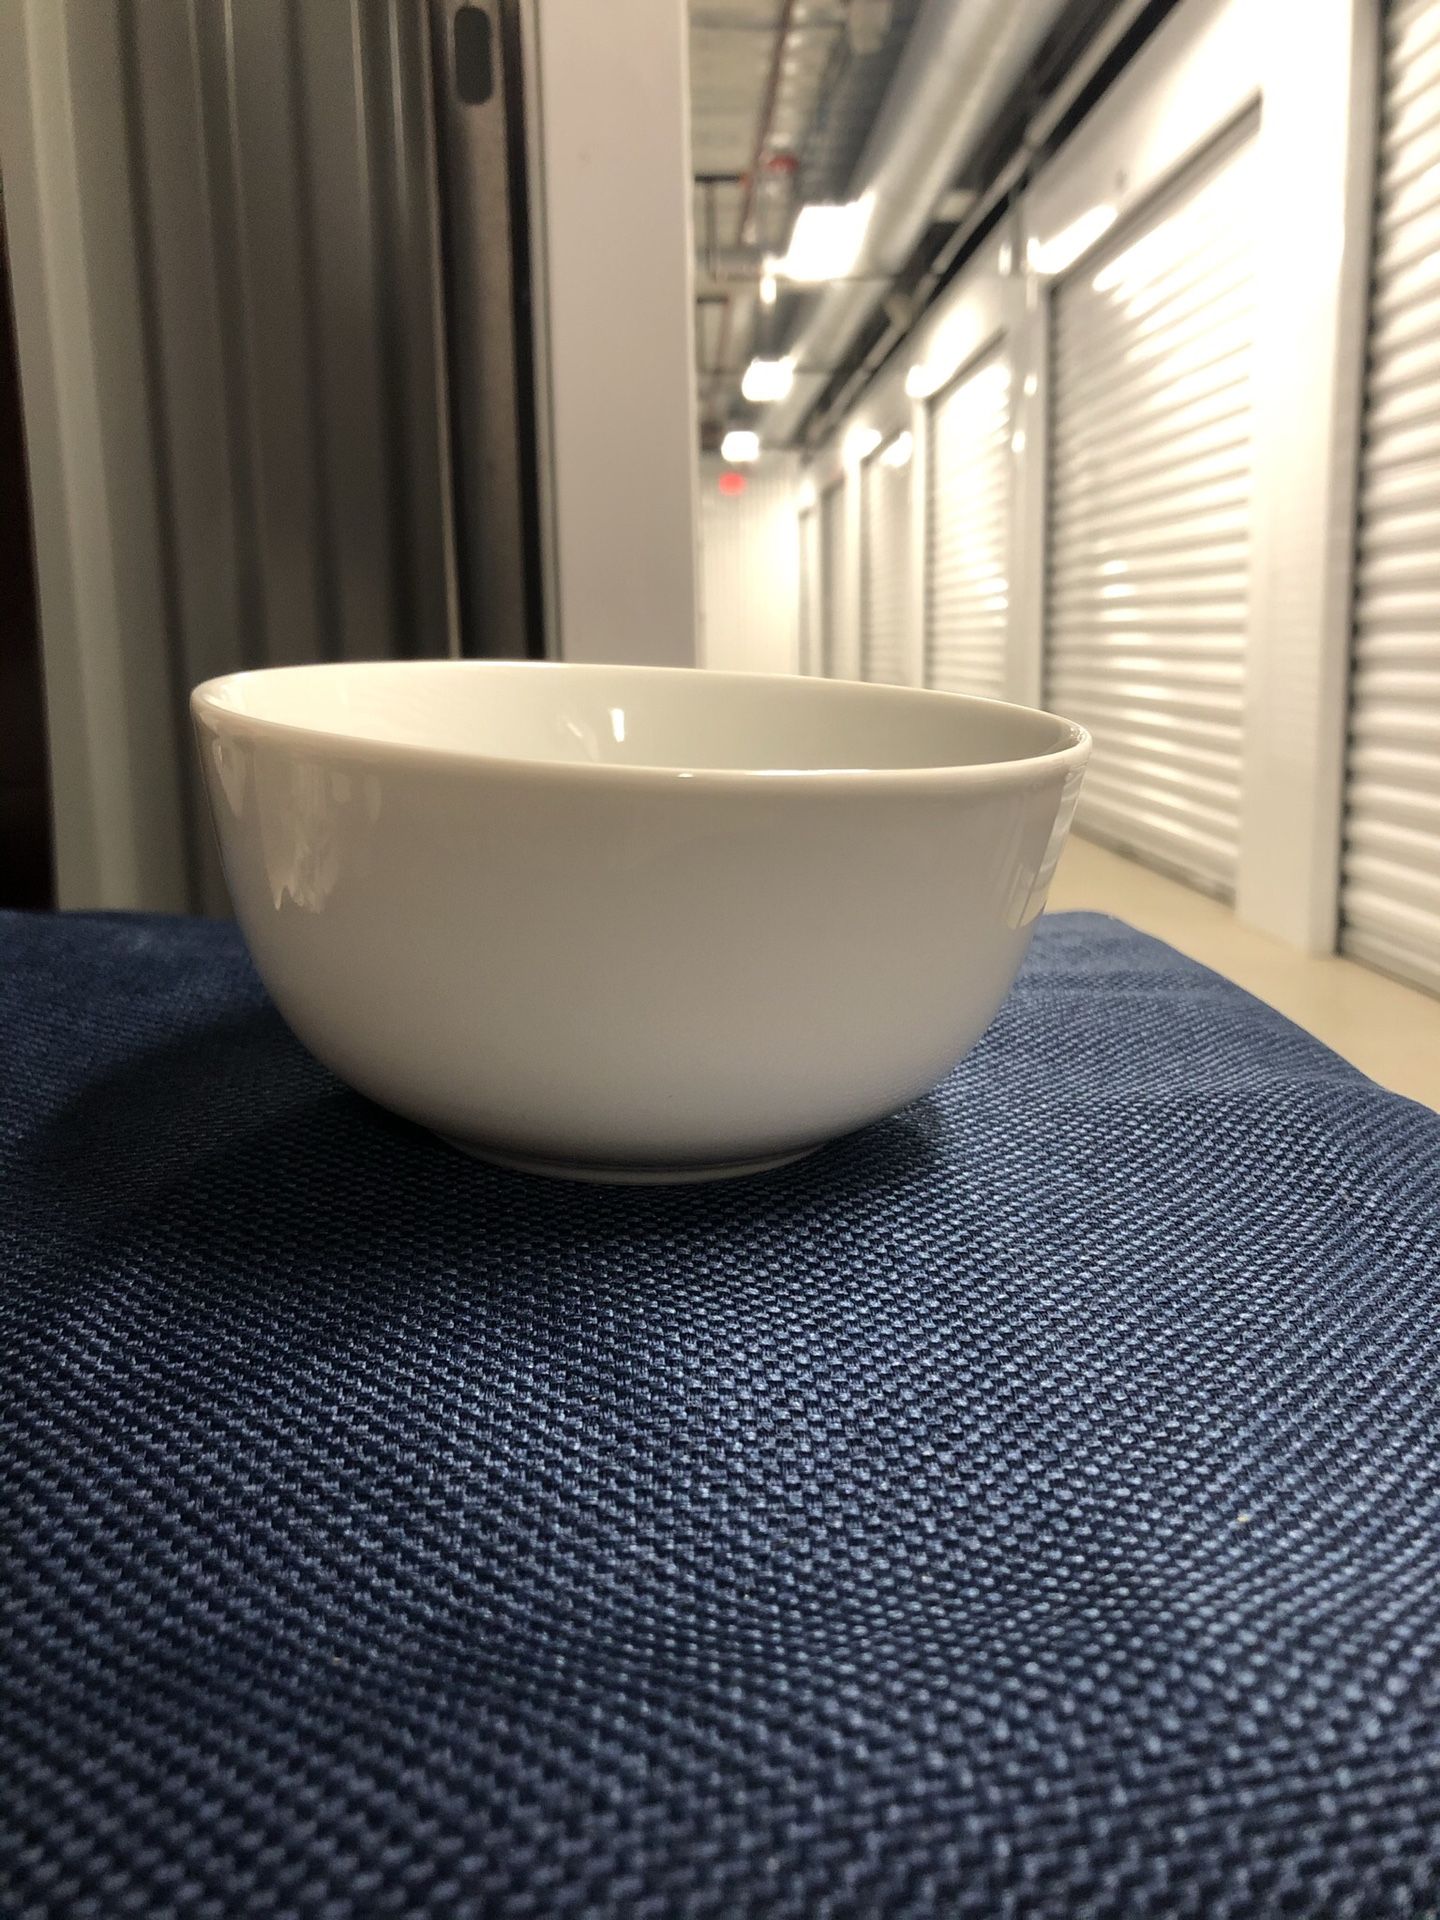 Amazon bowl